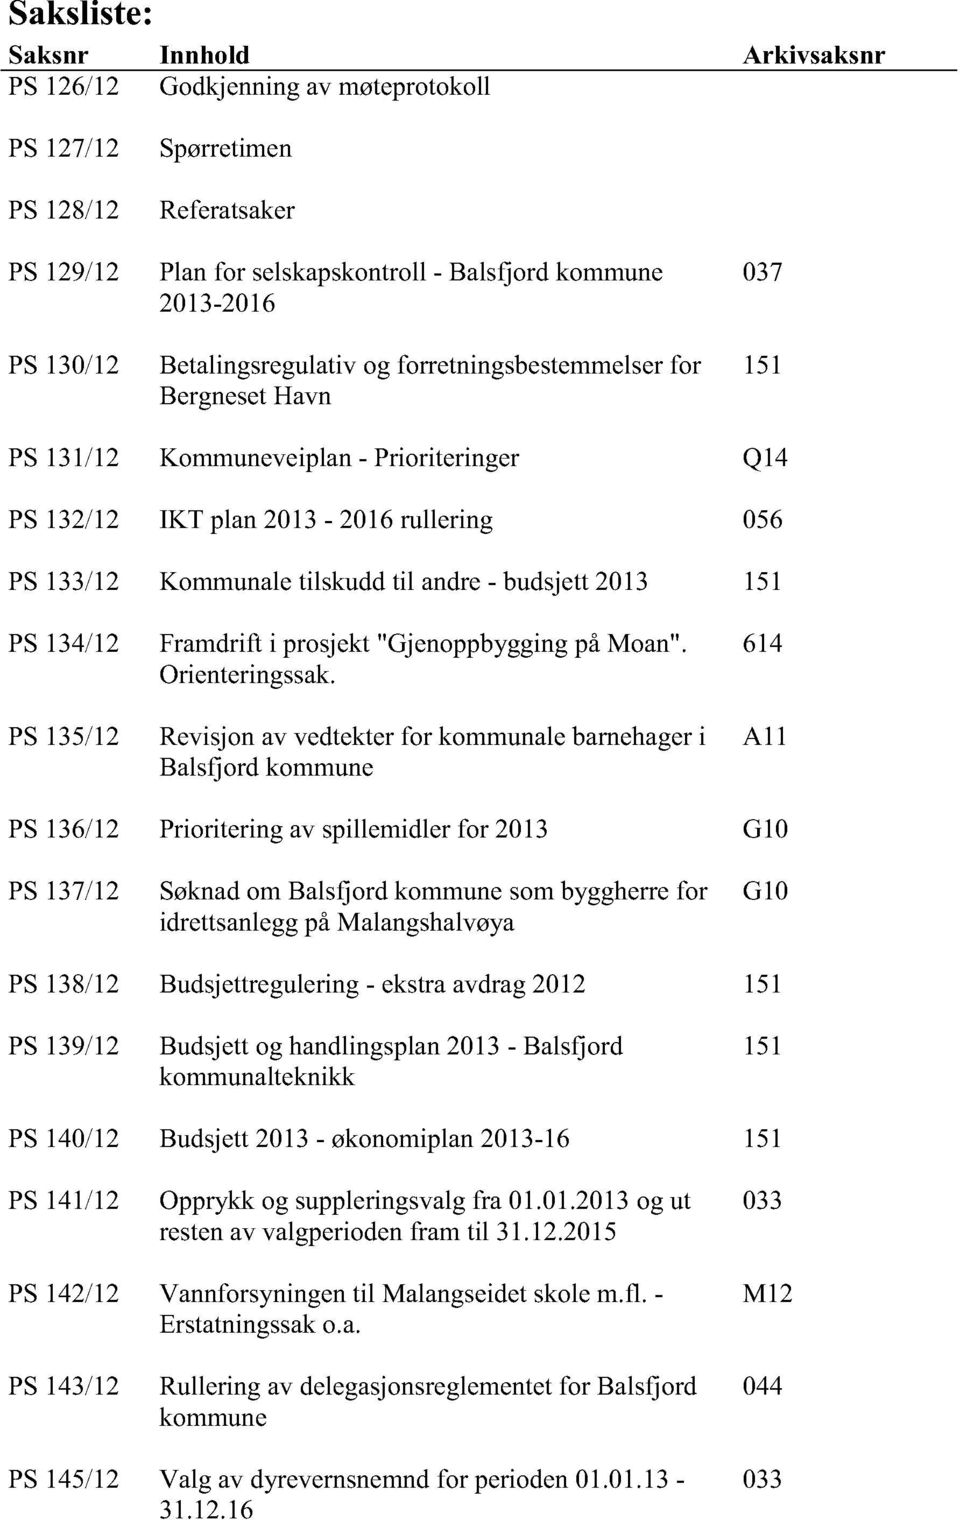 budsjett2013 151 PS134/12 PS135/12 Framdrifti prosjekt"gjenoppbyggingpåmoan". Orienteringssak.